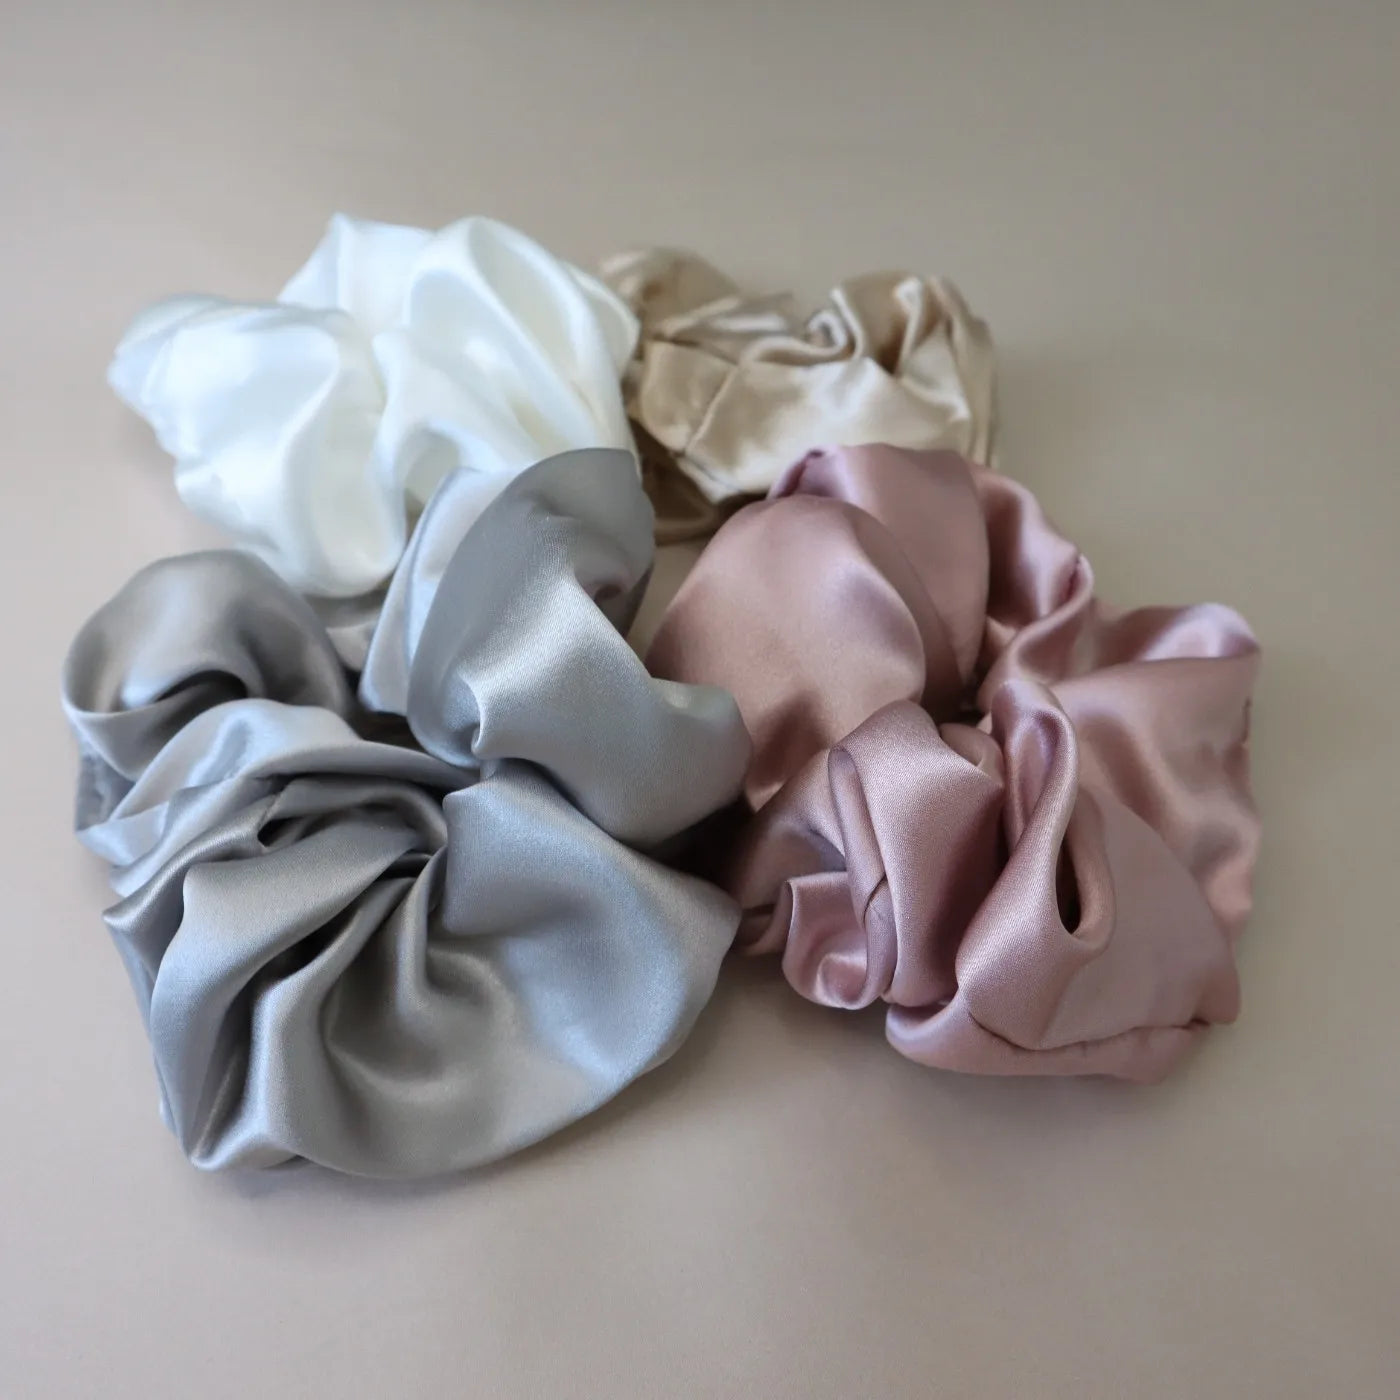 4 Silk Hair Scrunchie Set - Pink, White, Gold, Silver